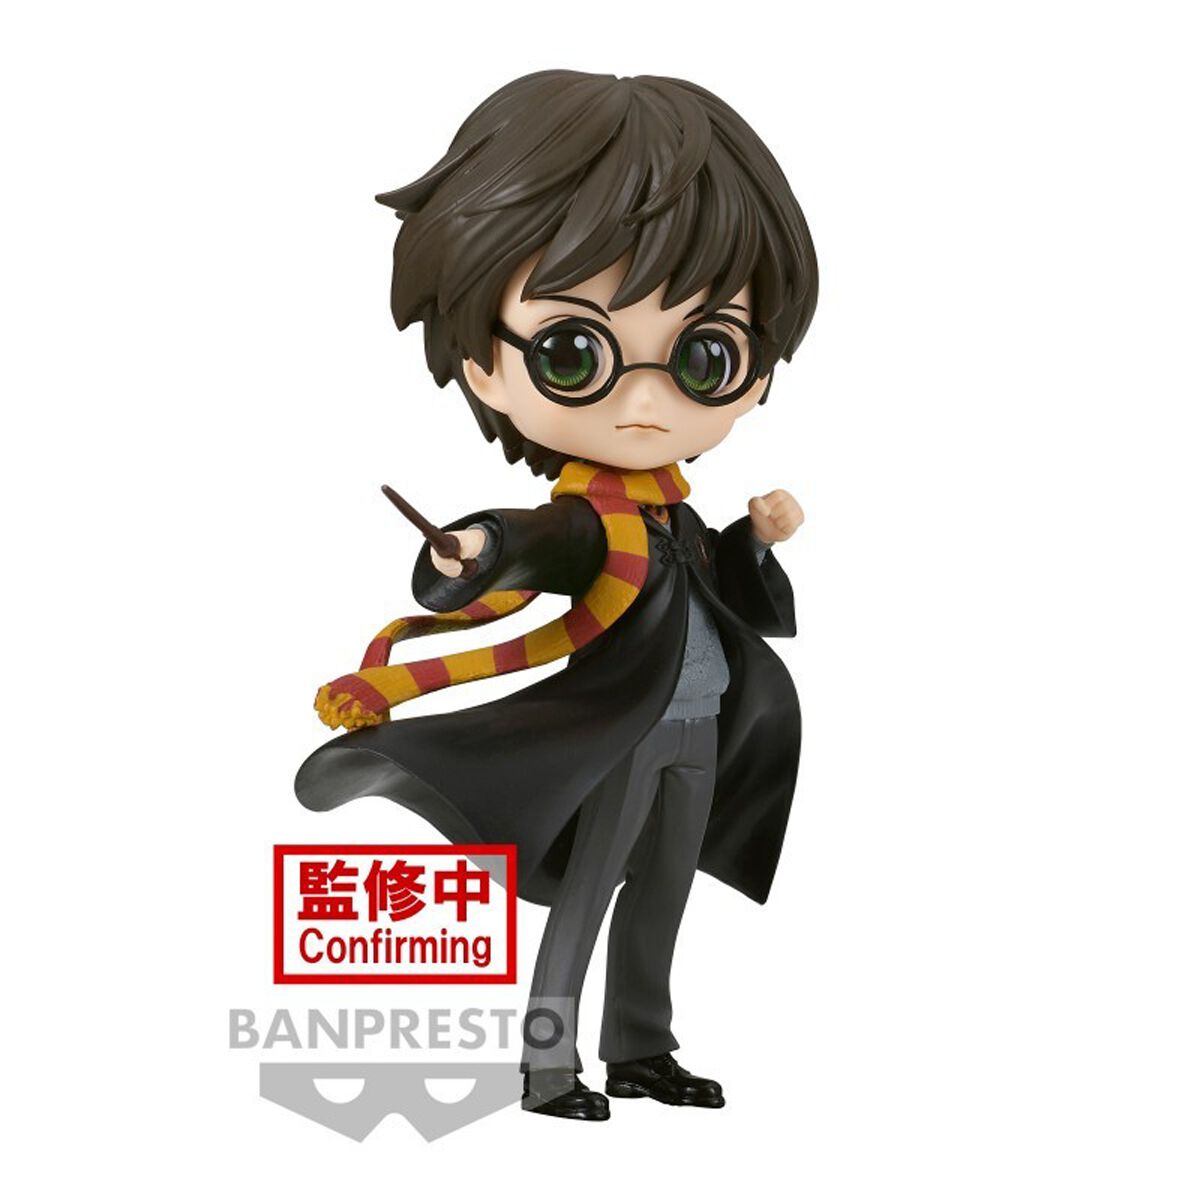 Harry Potter Sammelfiguren - Banpresto - Harry Q Posket - multicolor  - Lizenzierter Fanartikel von Harry Potter